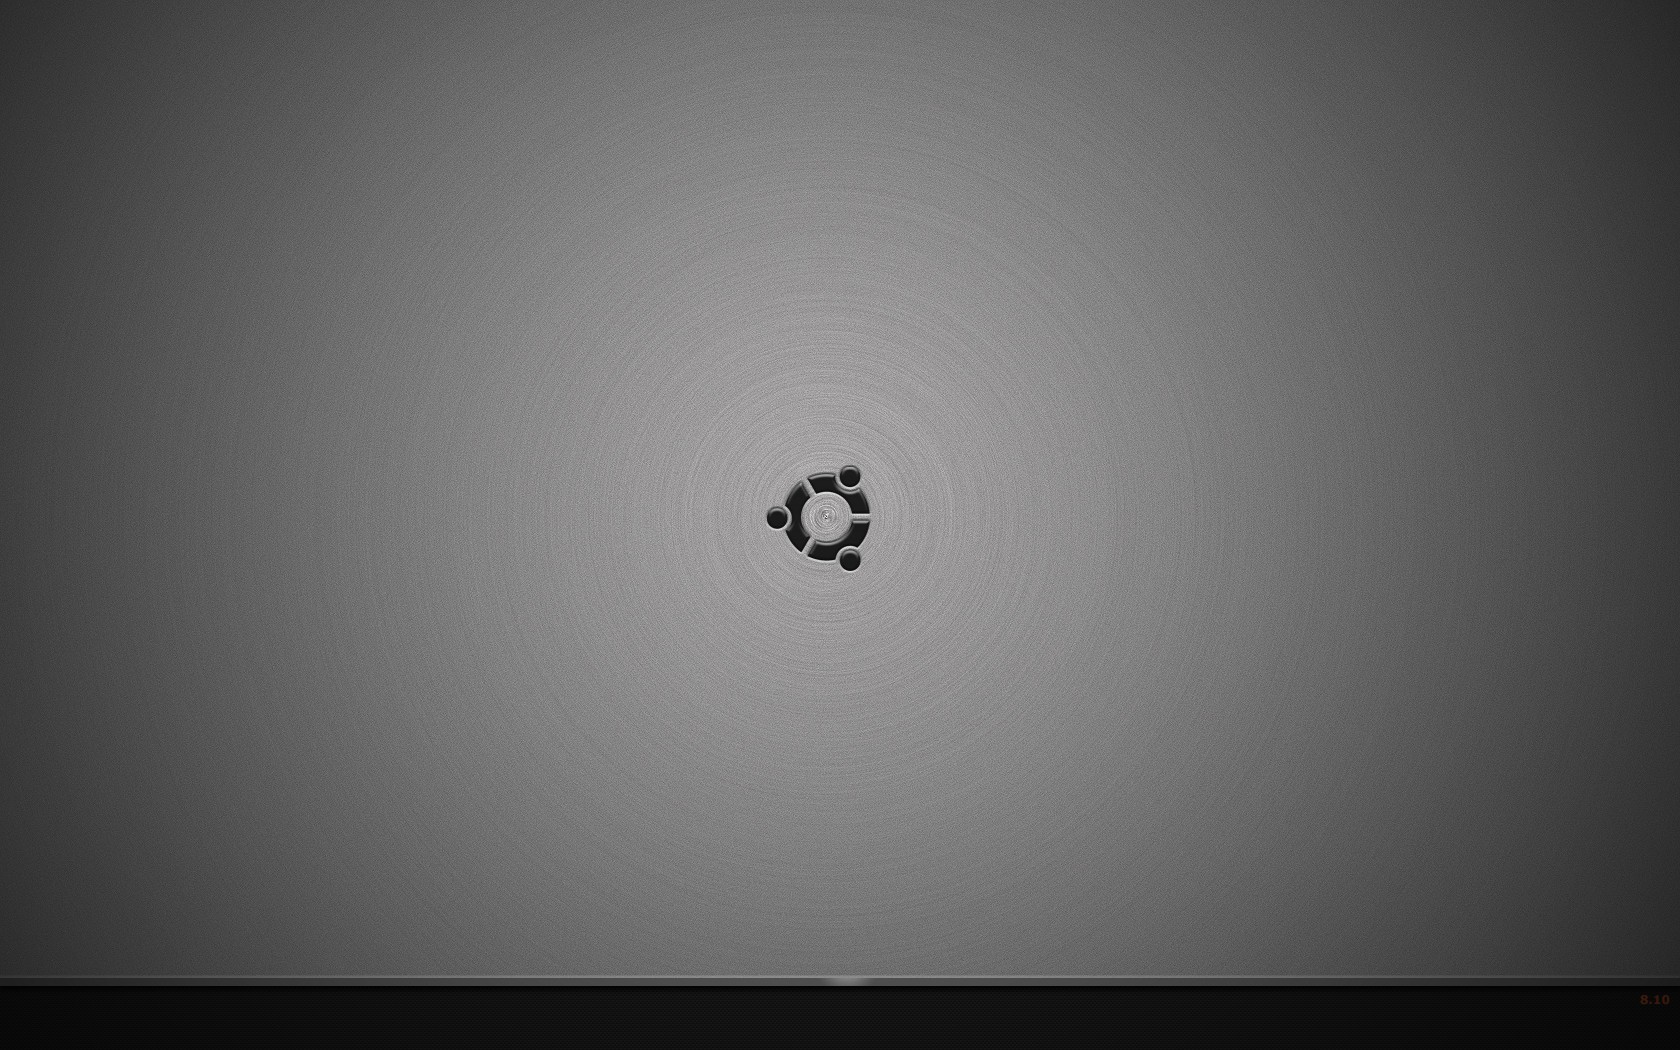 General 1680x1050 minimalism Ubuntu operating system logo monochrome simple background gray background